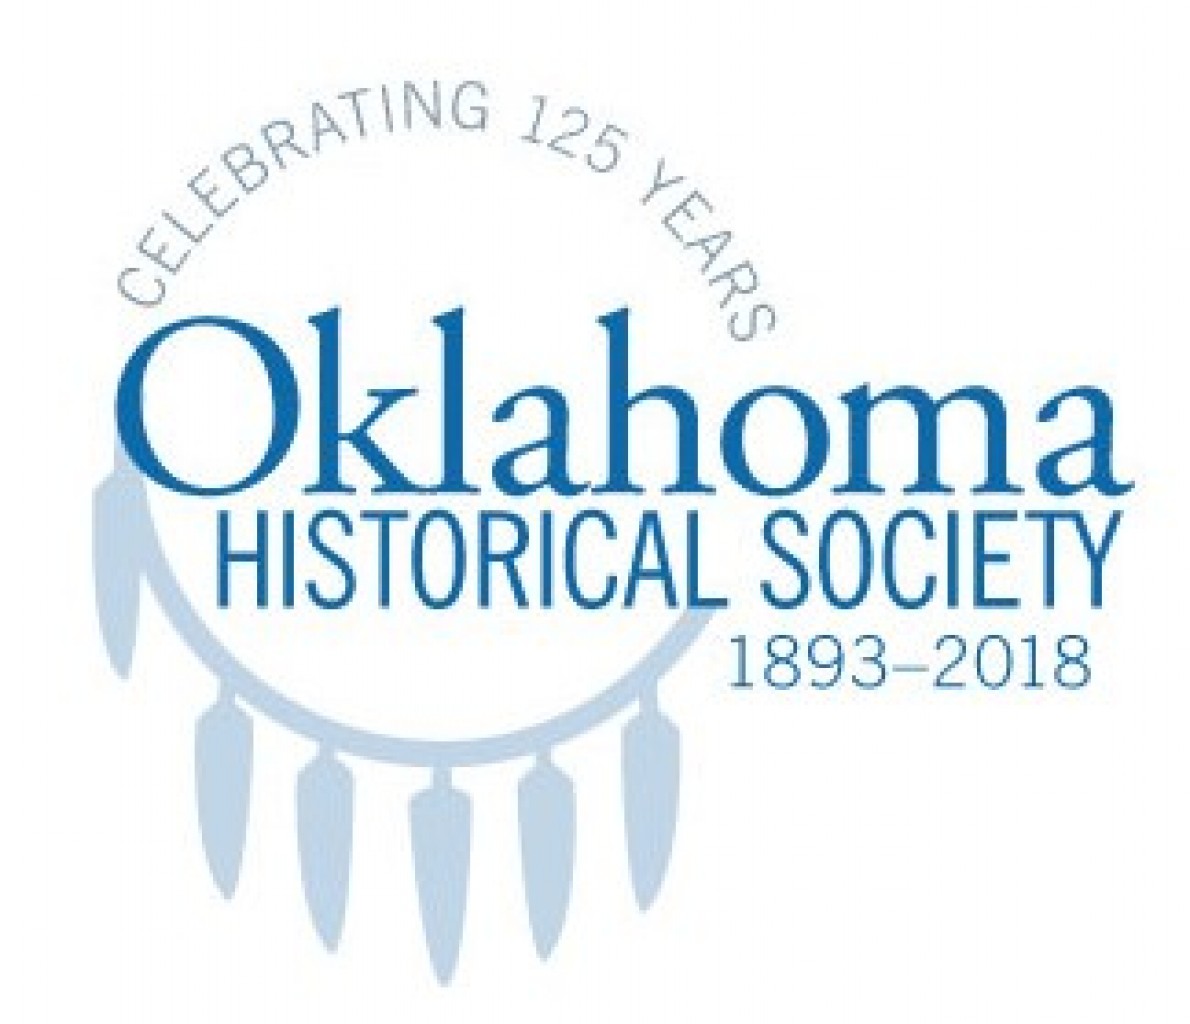 Celebrando el  125 Aniversario  de la Sociedad Histórica de Oklahoma